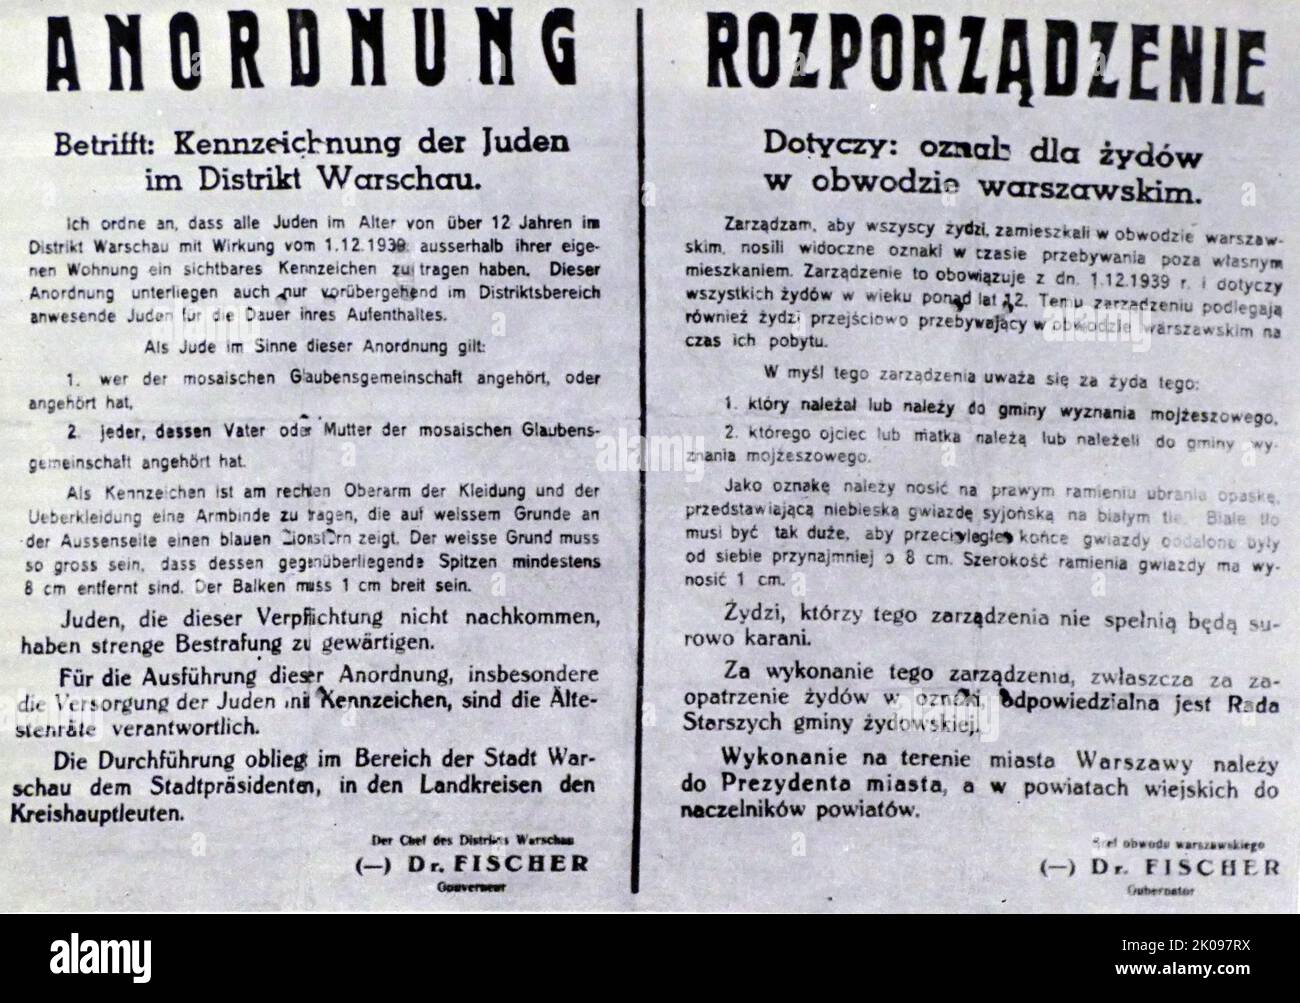 Anordnung Kennzeichnung der Juden im Distrikt Krakau